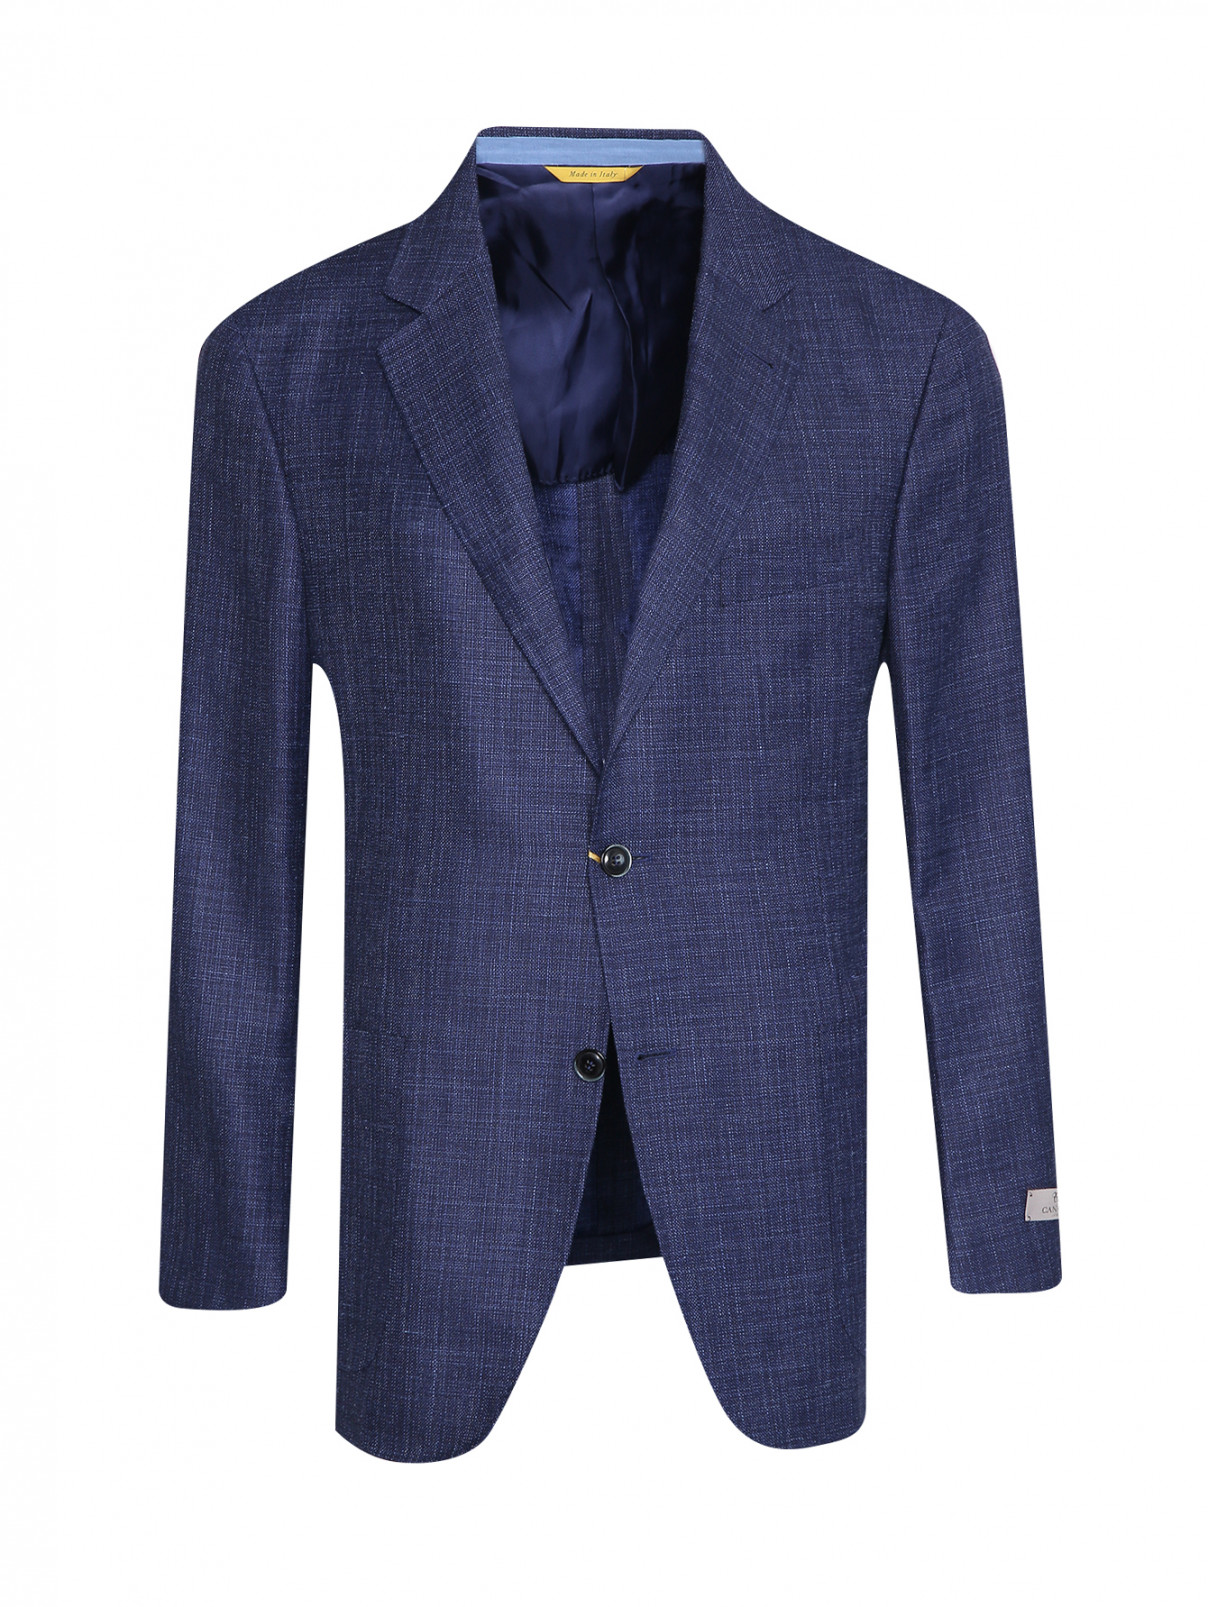 Пиджак из шерсти шелка и льна с карманами Canali  –  Общий вид  – Цвет:  Синий